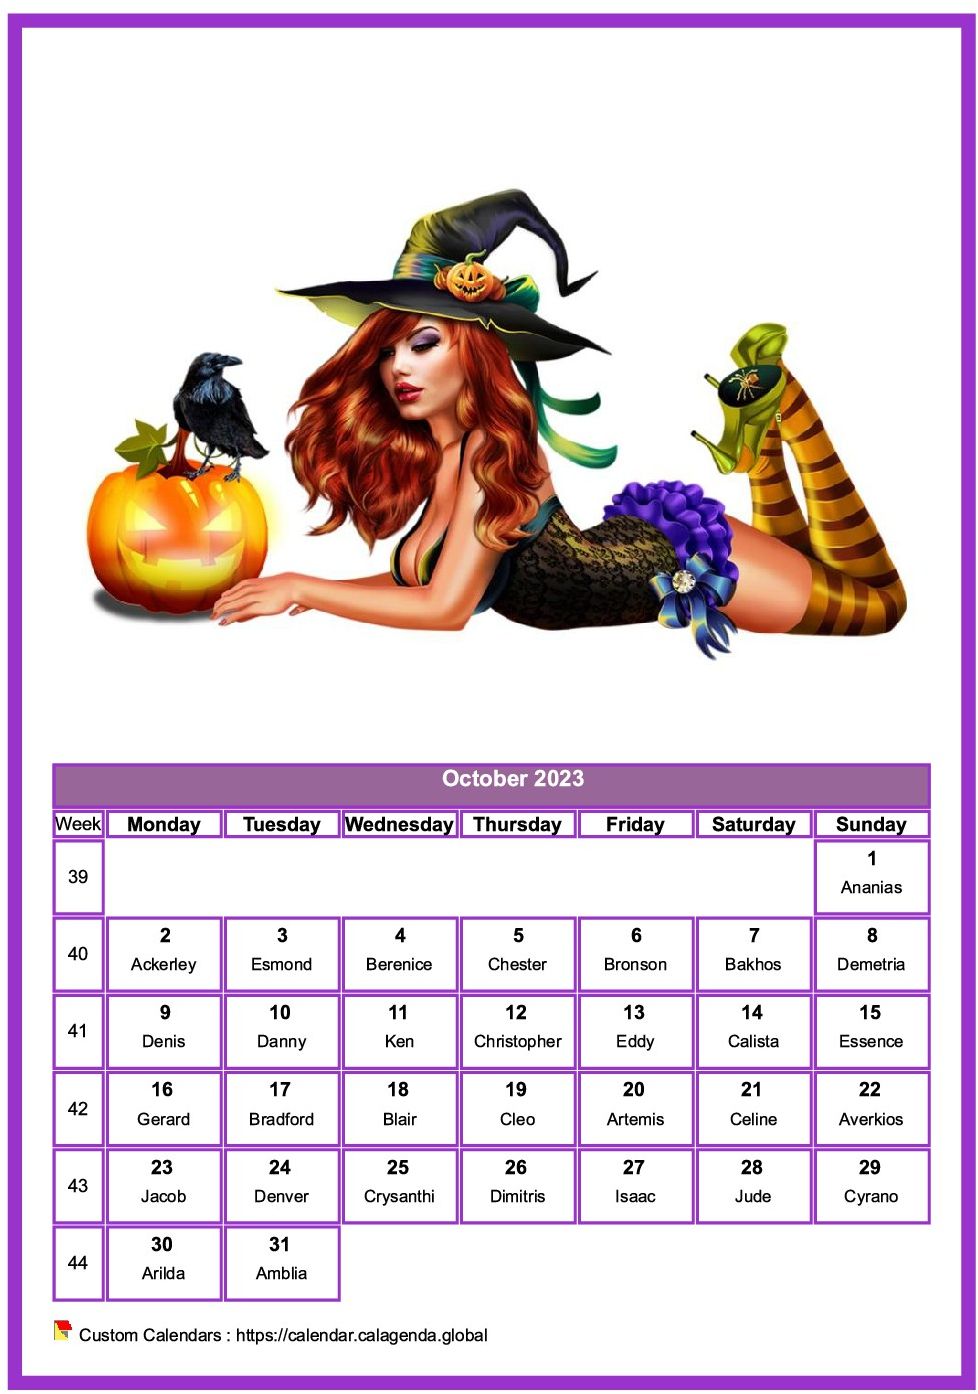 Calendar October 2023 women